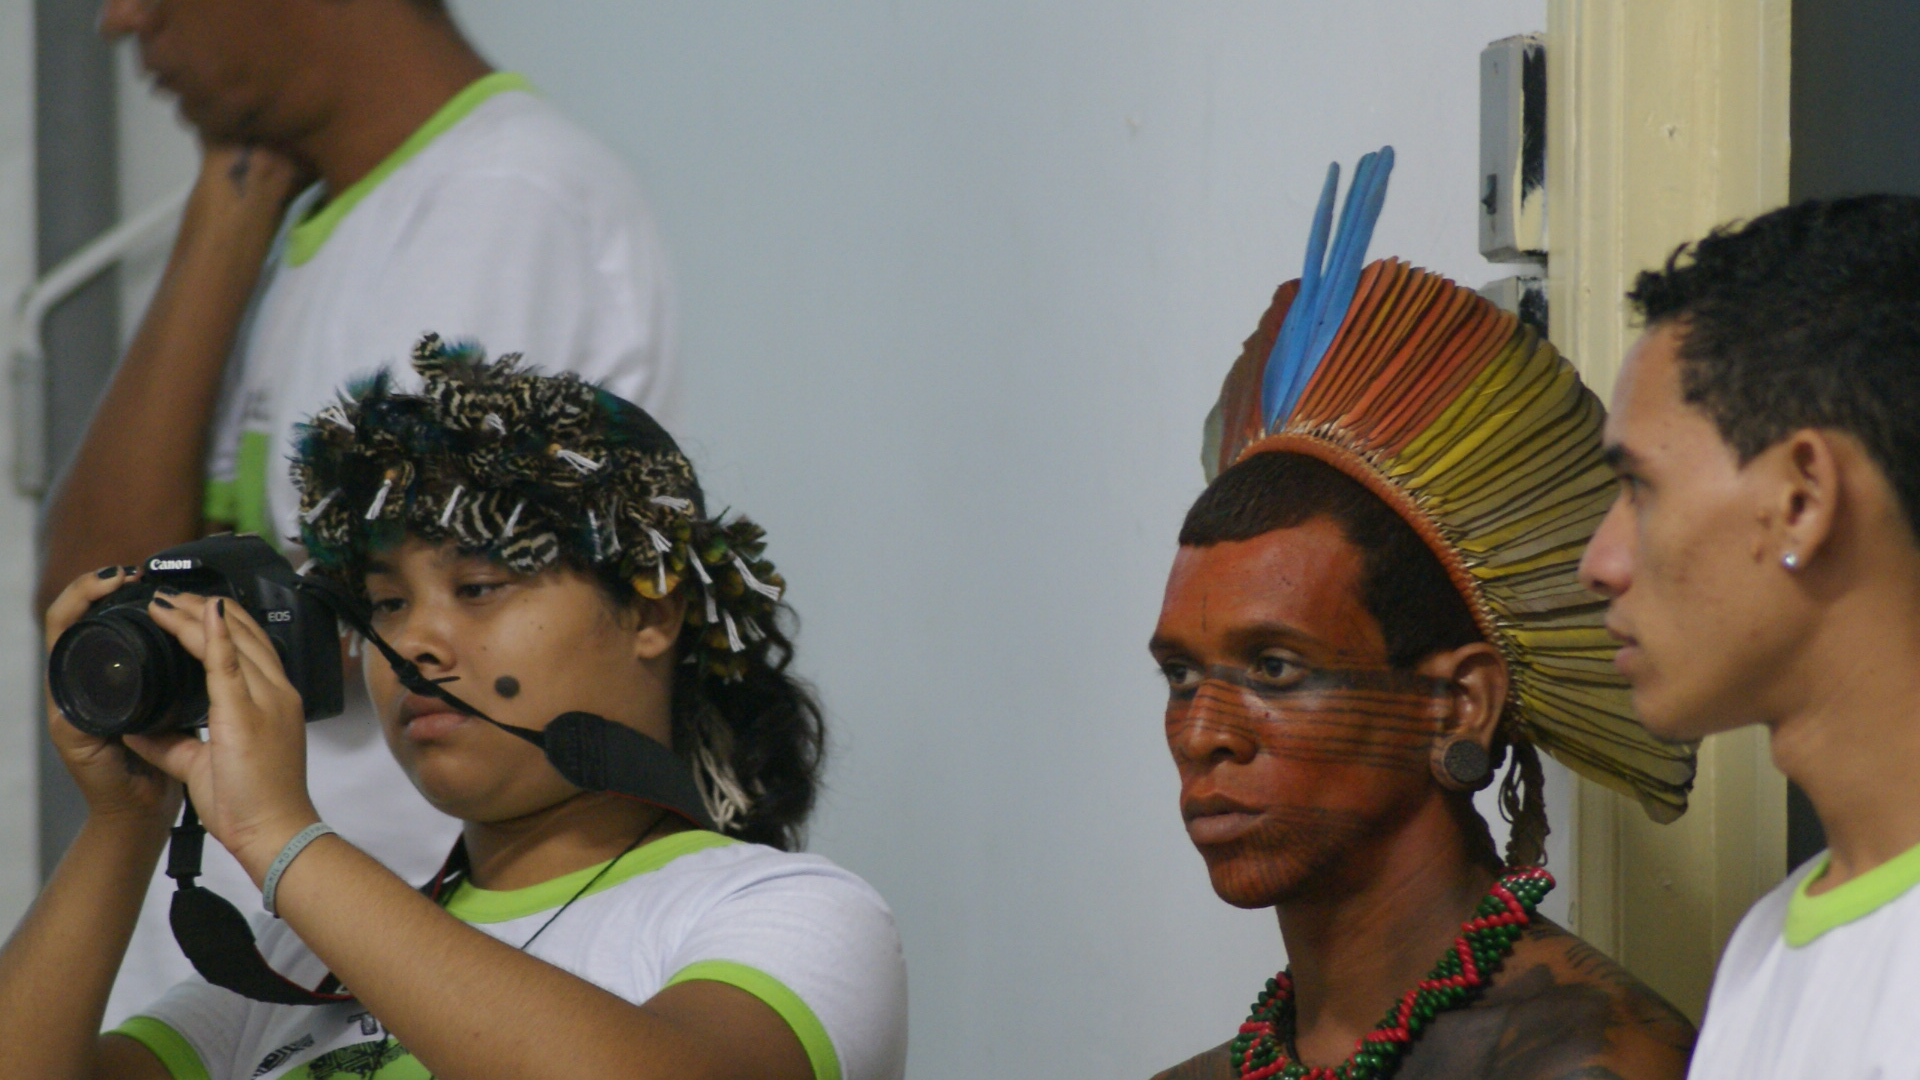 Canção feita por jovens da etnia Tupinambá de Olivença, cantadas aqui por Yaru e Lucas Tupinambá. Gravada nas Oficinas da Oca Digital, em Tupinambá de Olivença.